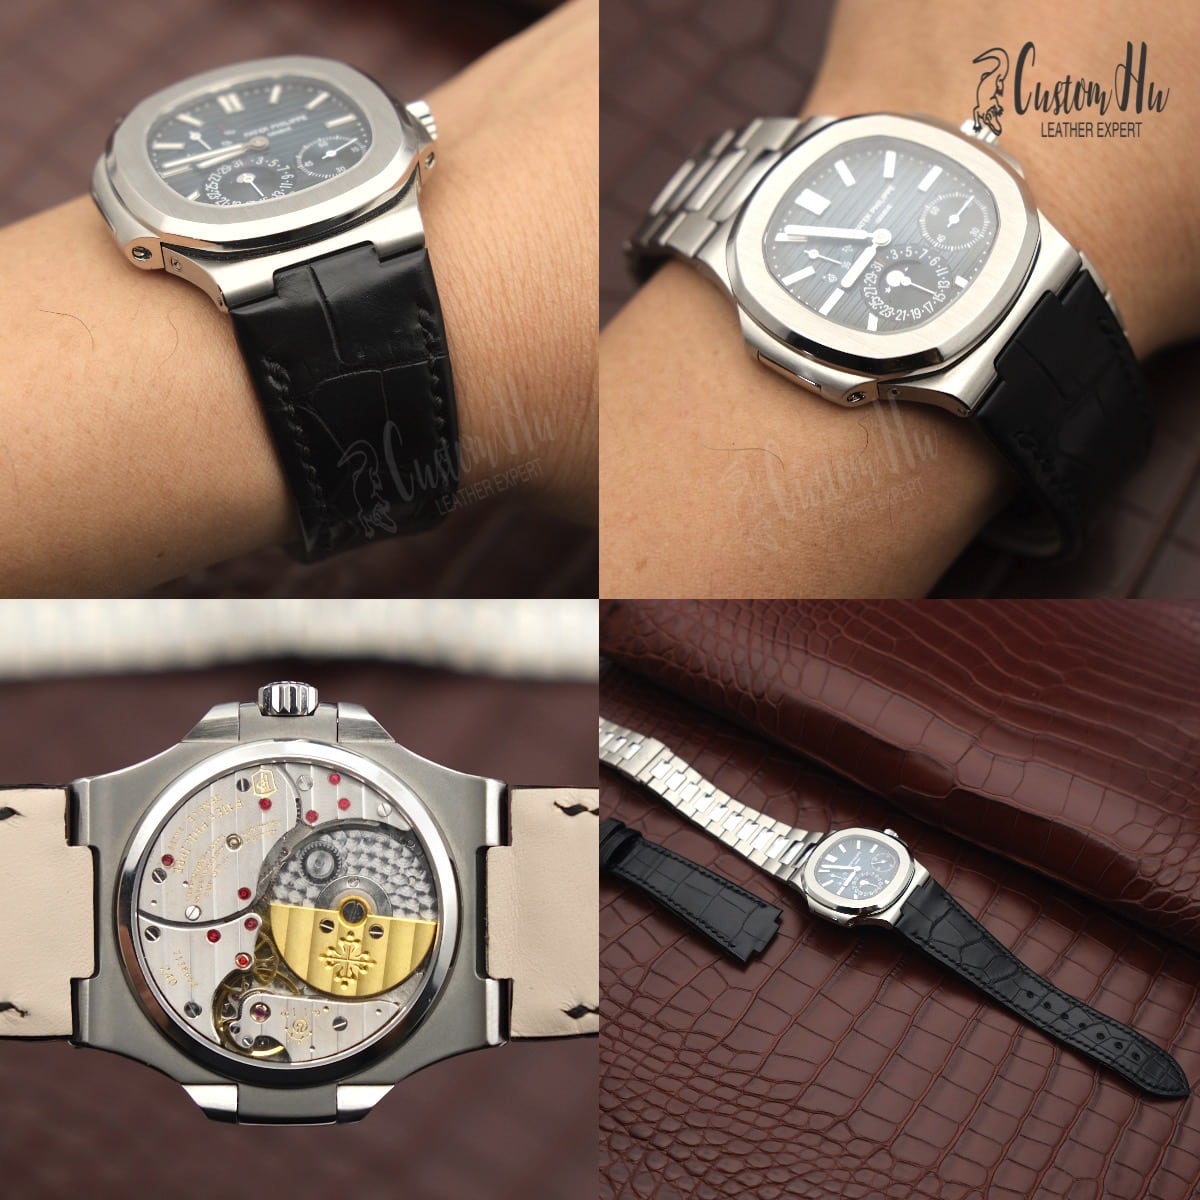 Cinturino di lusso personalizzato per i tuoi orologi Cinturino per orologio personalizzato Supporta qualsiasi stile e colore customhu